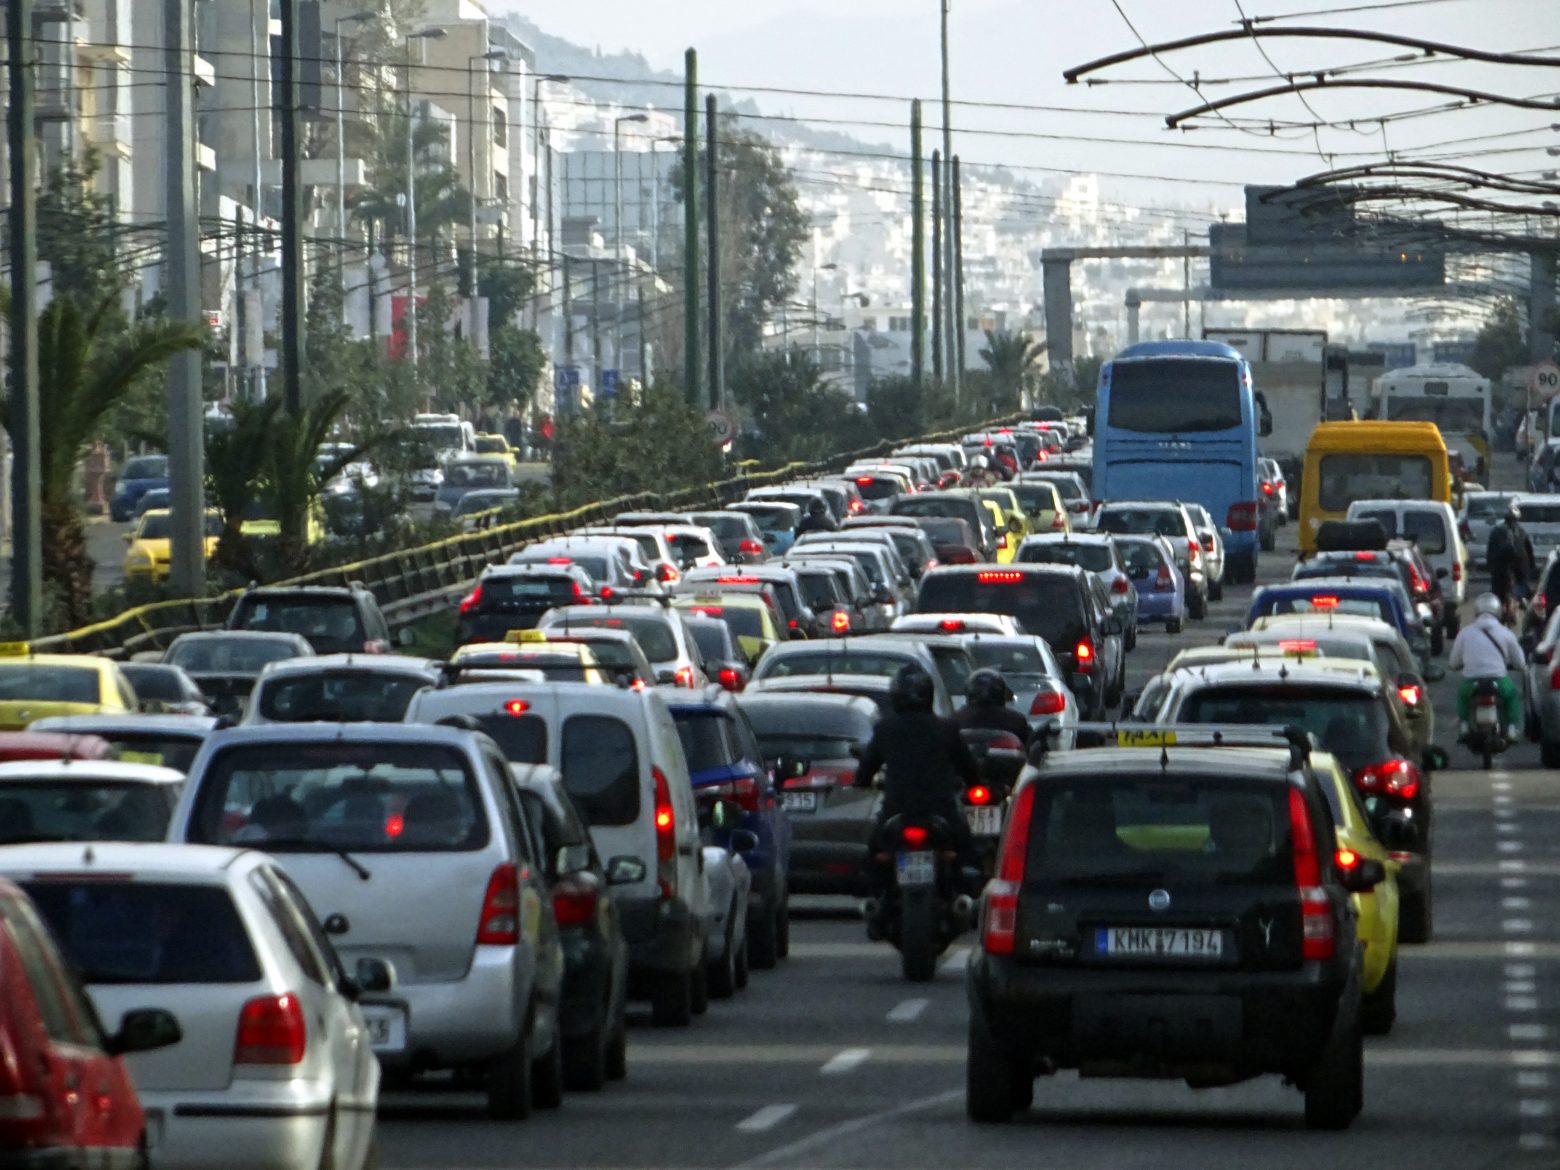 Κυκλοφοριακό χάος στην Αττική Οδό λόγω τροχαίου - Πού αλλού εντοπίζονται προβλήματα